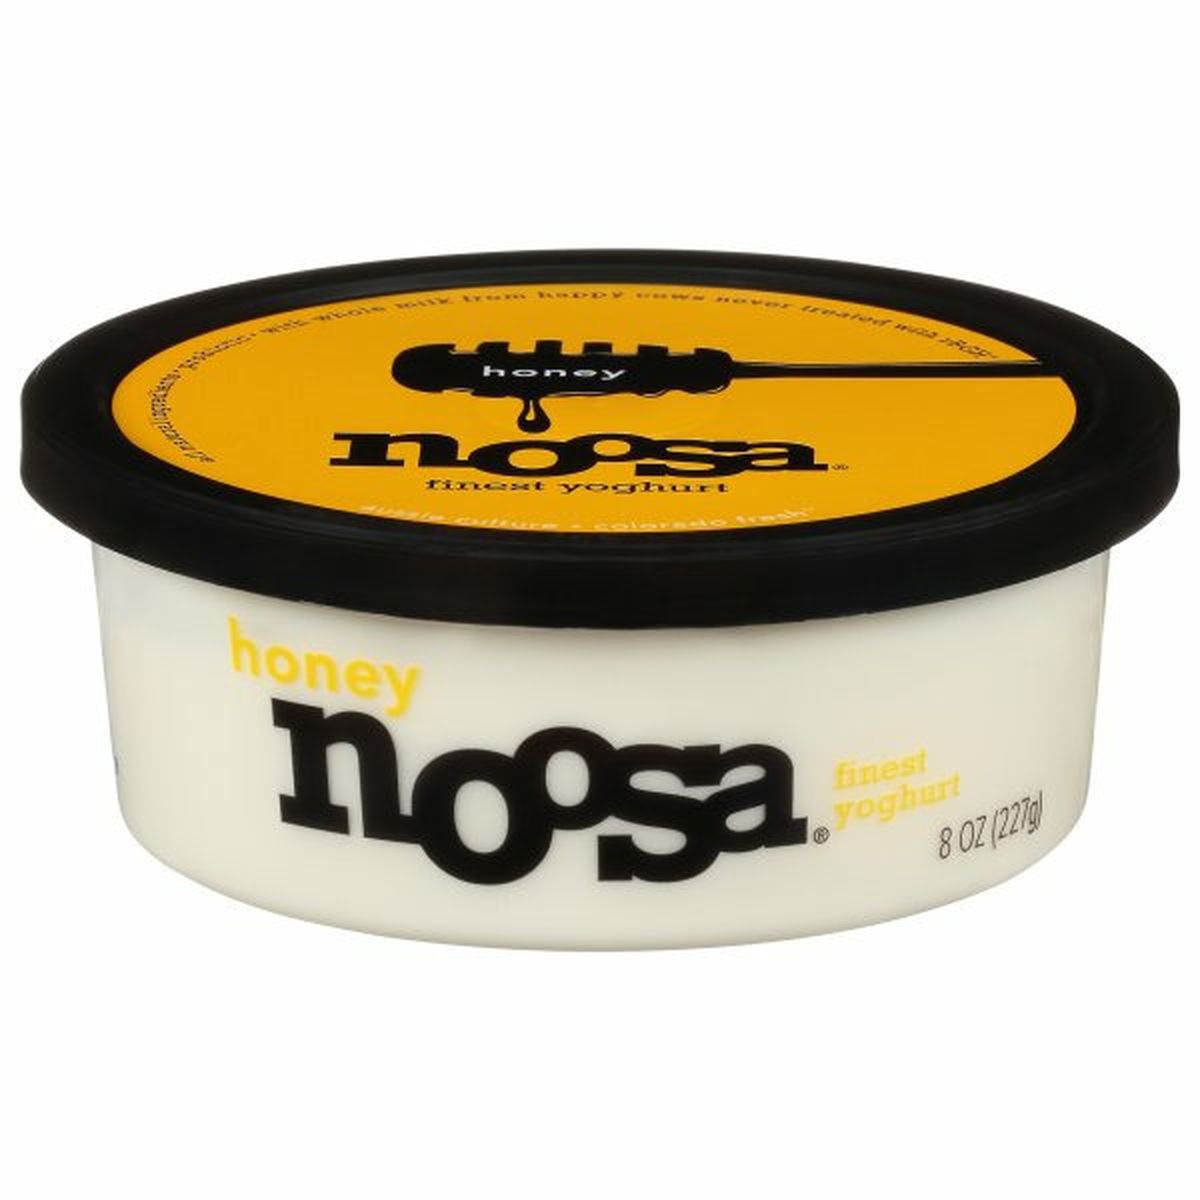 Calories in noosa Finest Yoghurt, Honey